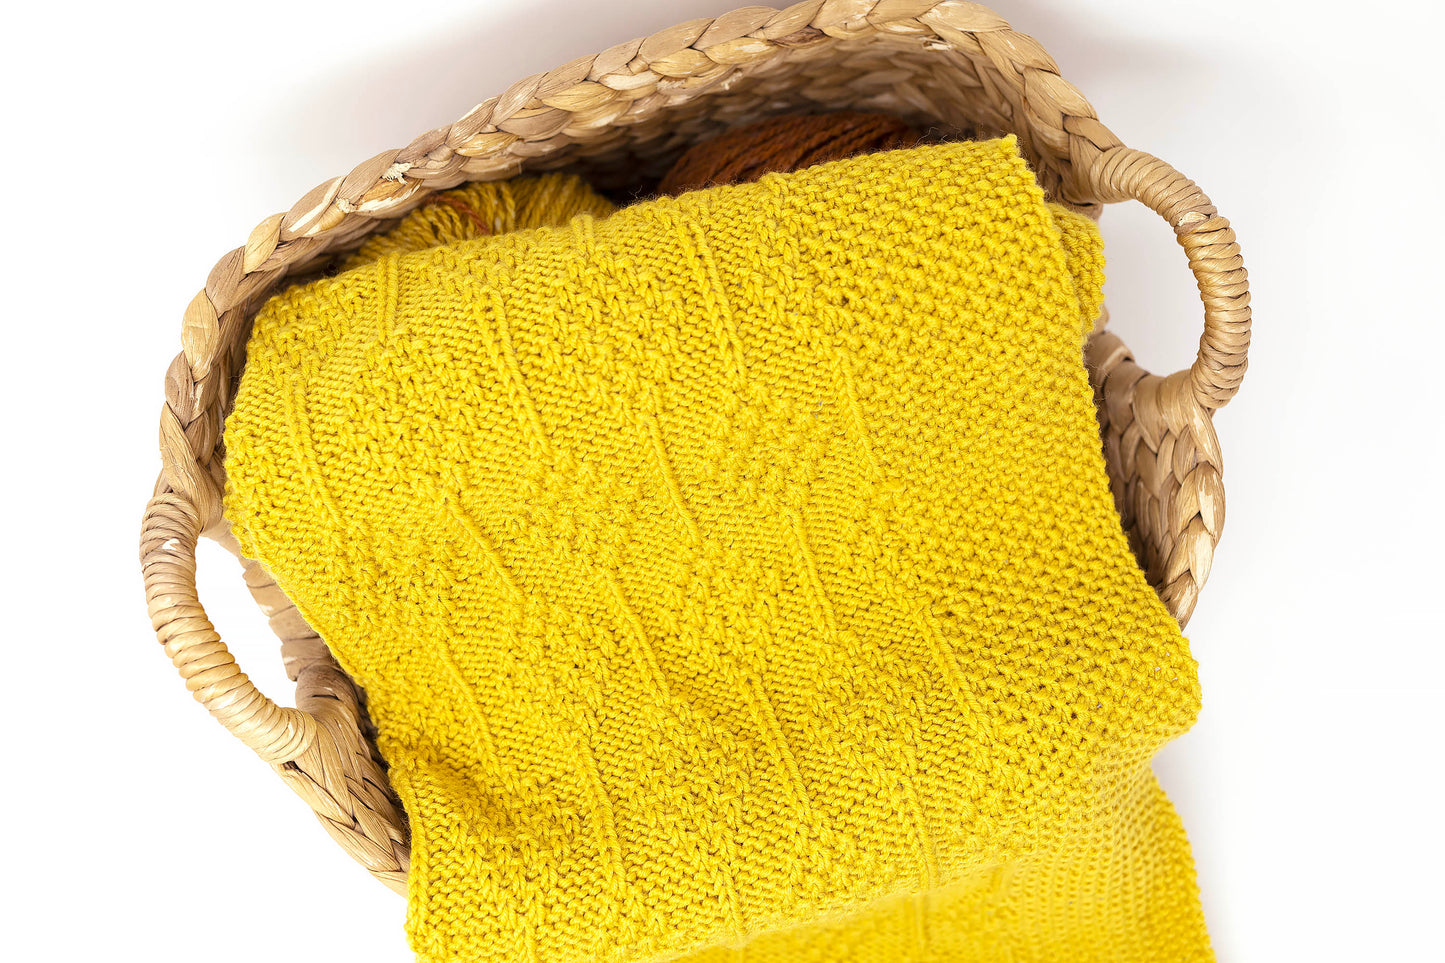 mustard yellow merino wool hand-knitted baby blanket in Diamonds pattern